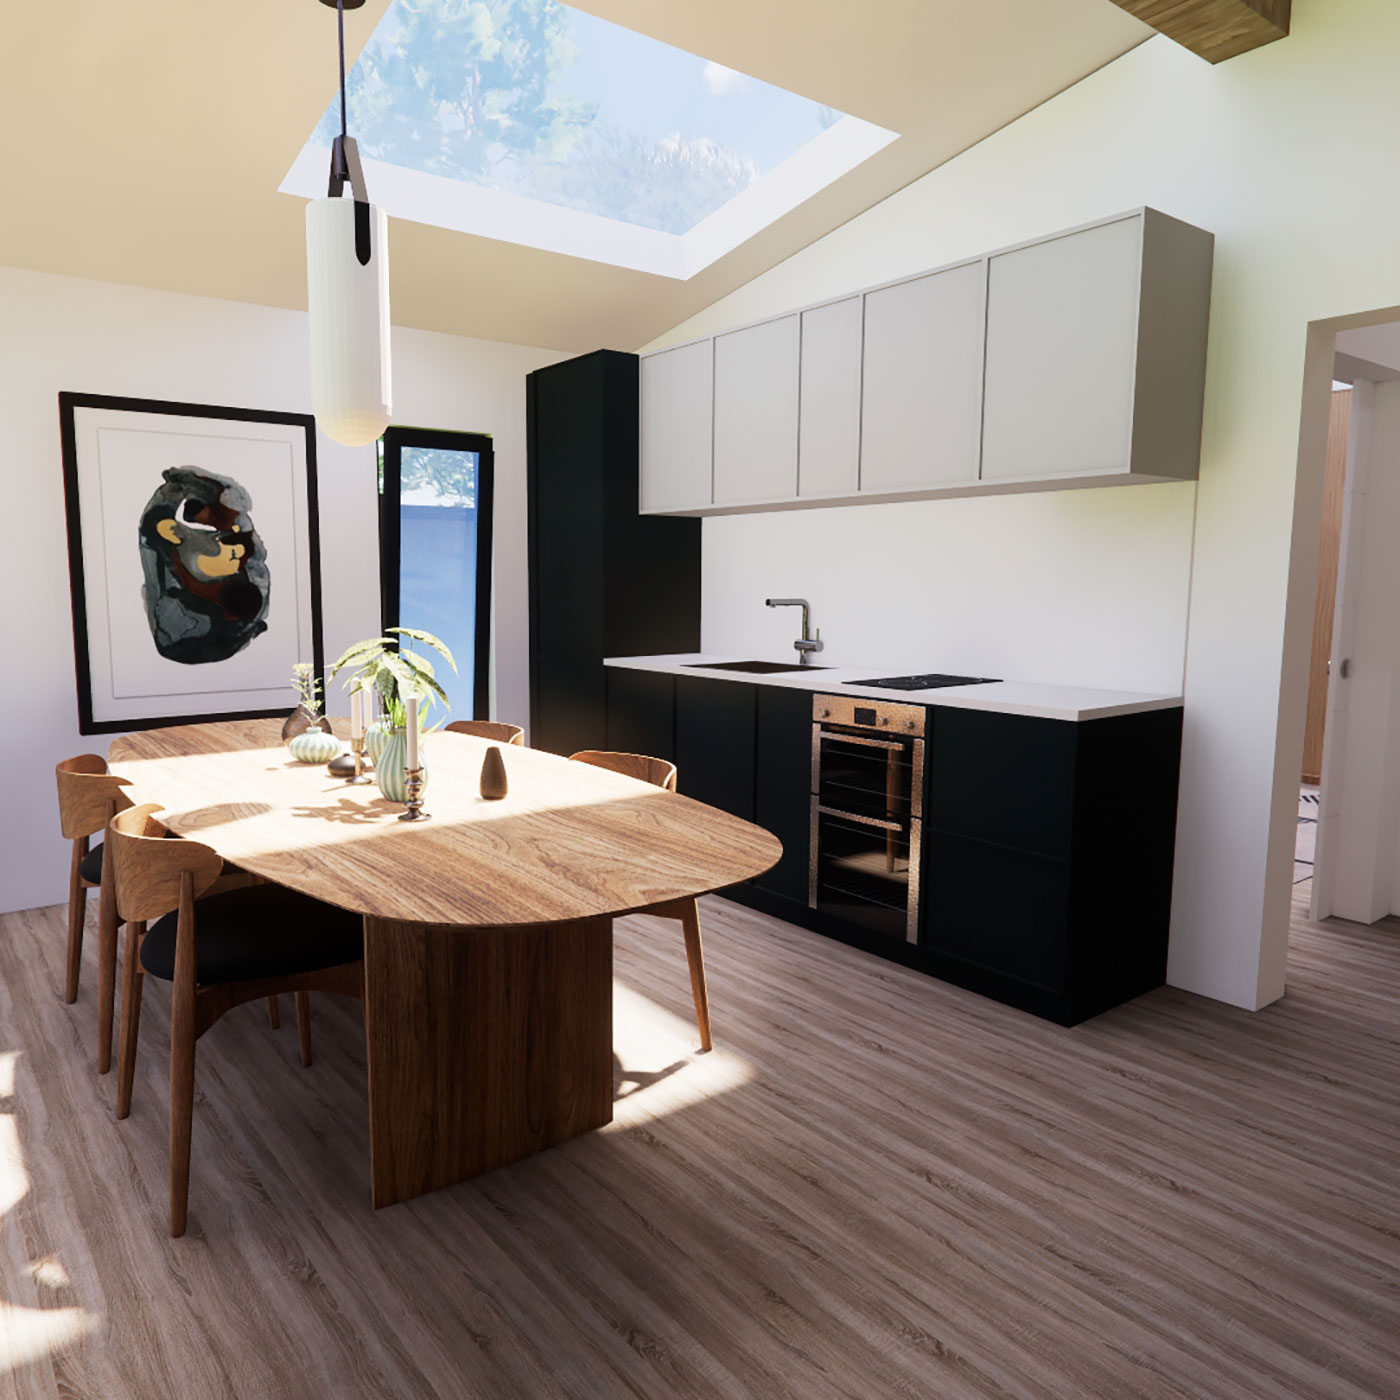 Kitchen area interior design 6.5m by 10.9m mobile home